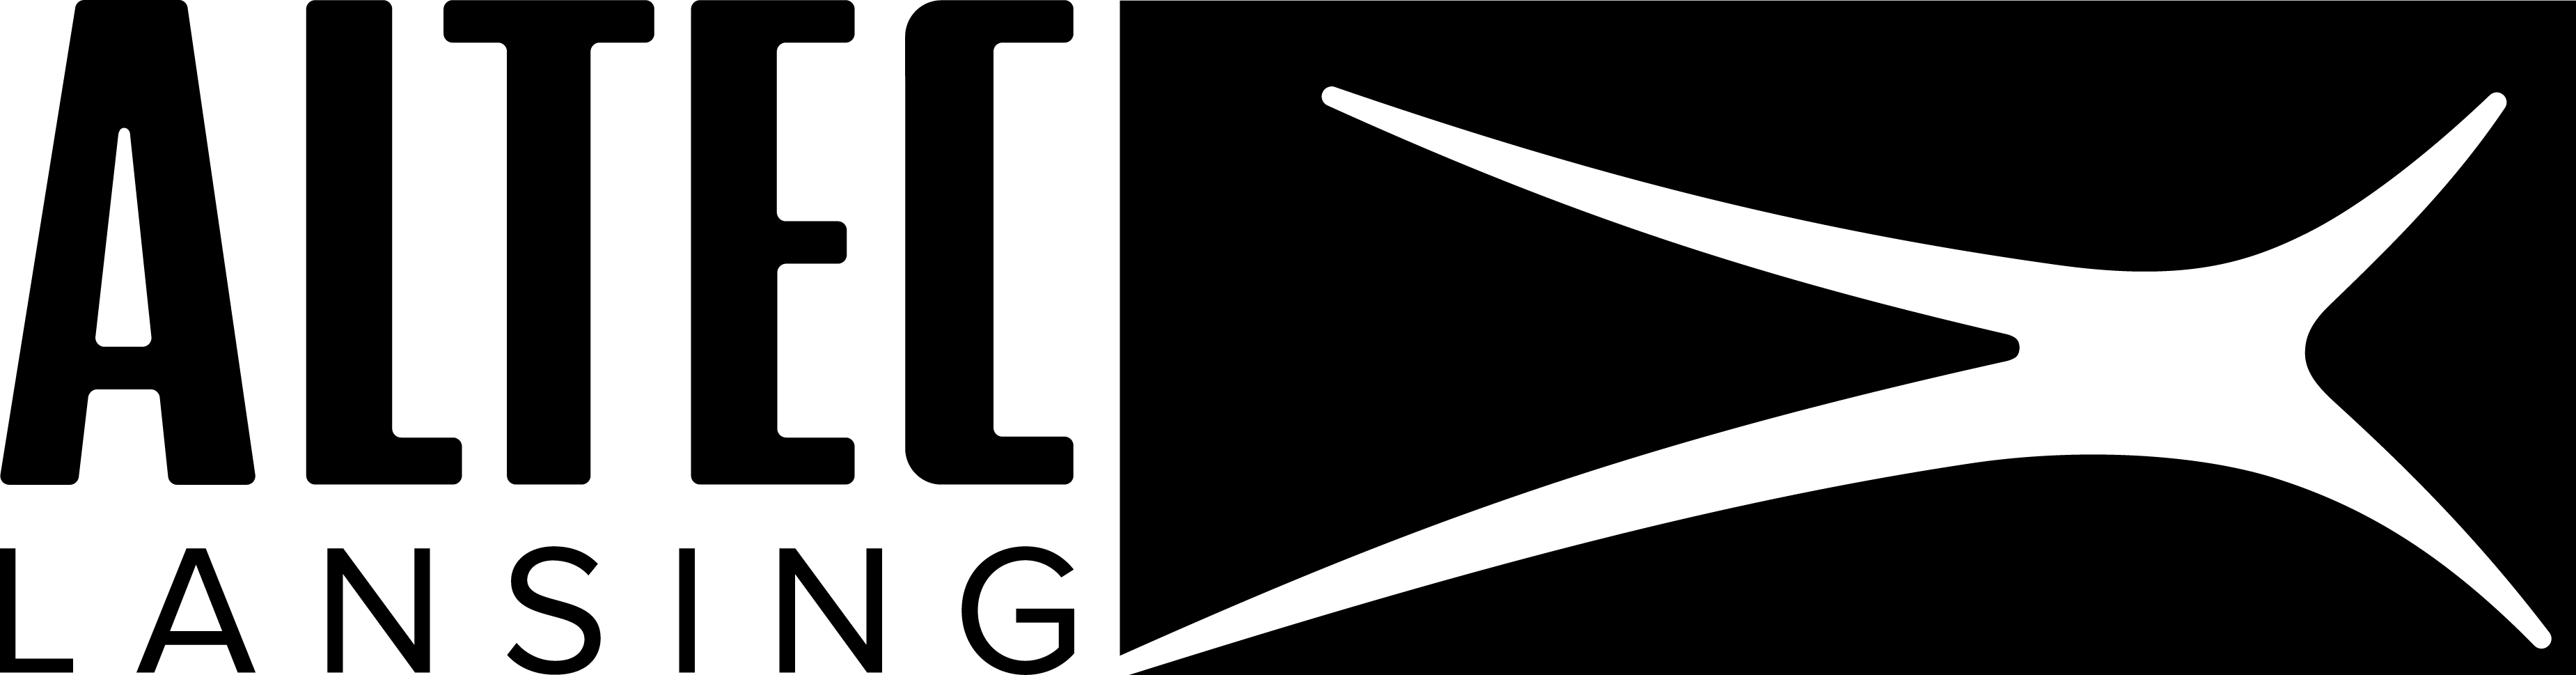 Lansing Logo - Altec Lansing logo